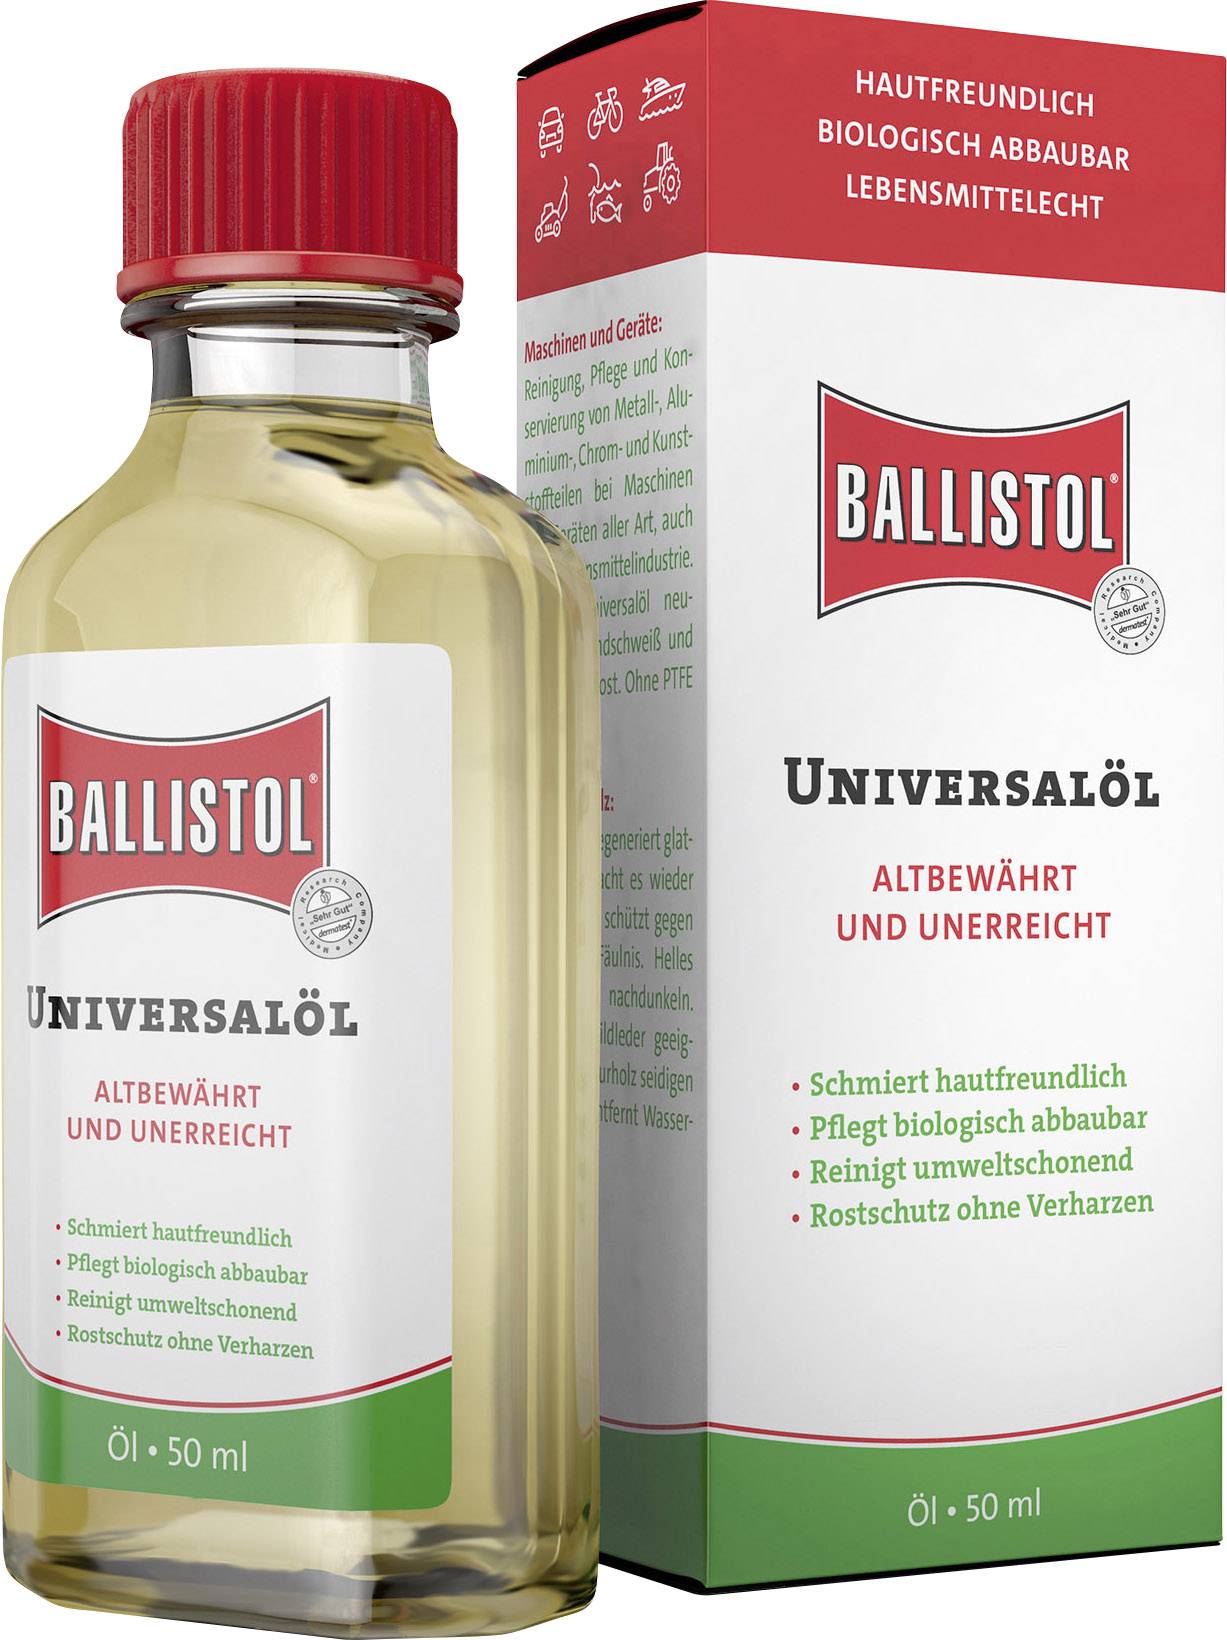 Ballistol 50 mljpg